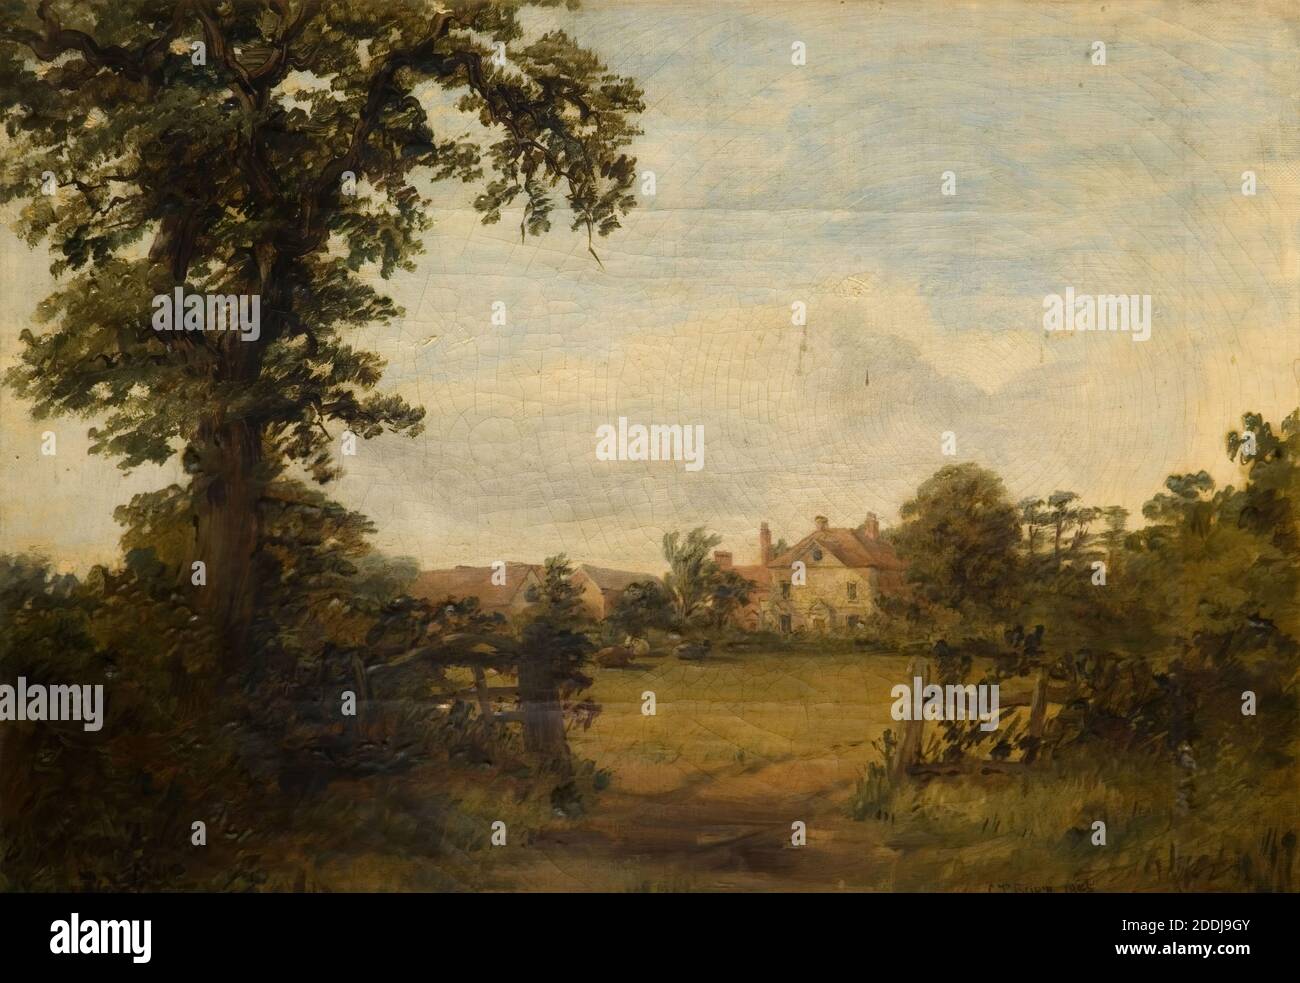 Metchley Park Farm Harborne, 1845 von Charles Thomas Burt, Ölgemälde, topographische Ansichten, Landschaft, Birmingham Geschichte Stockfoto